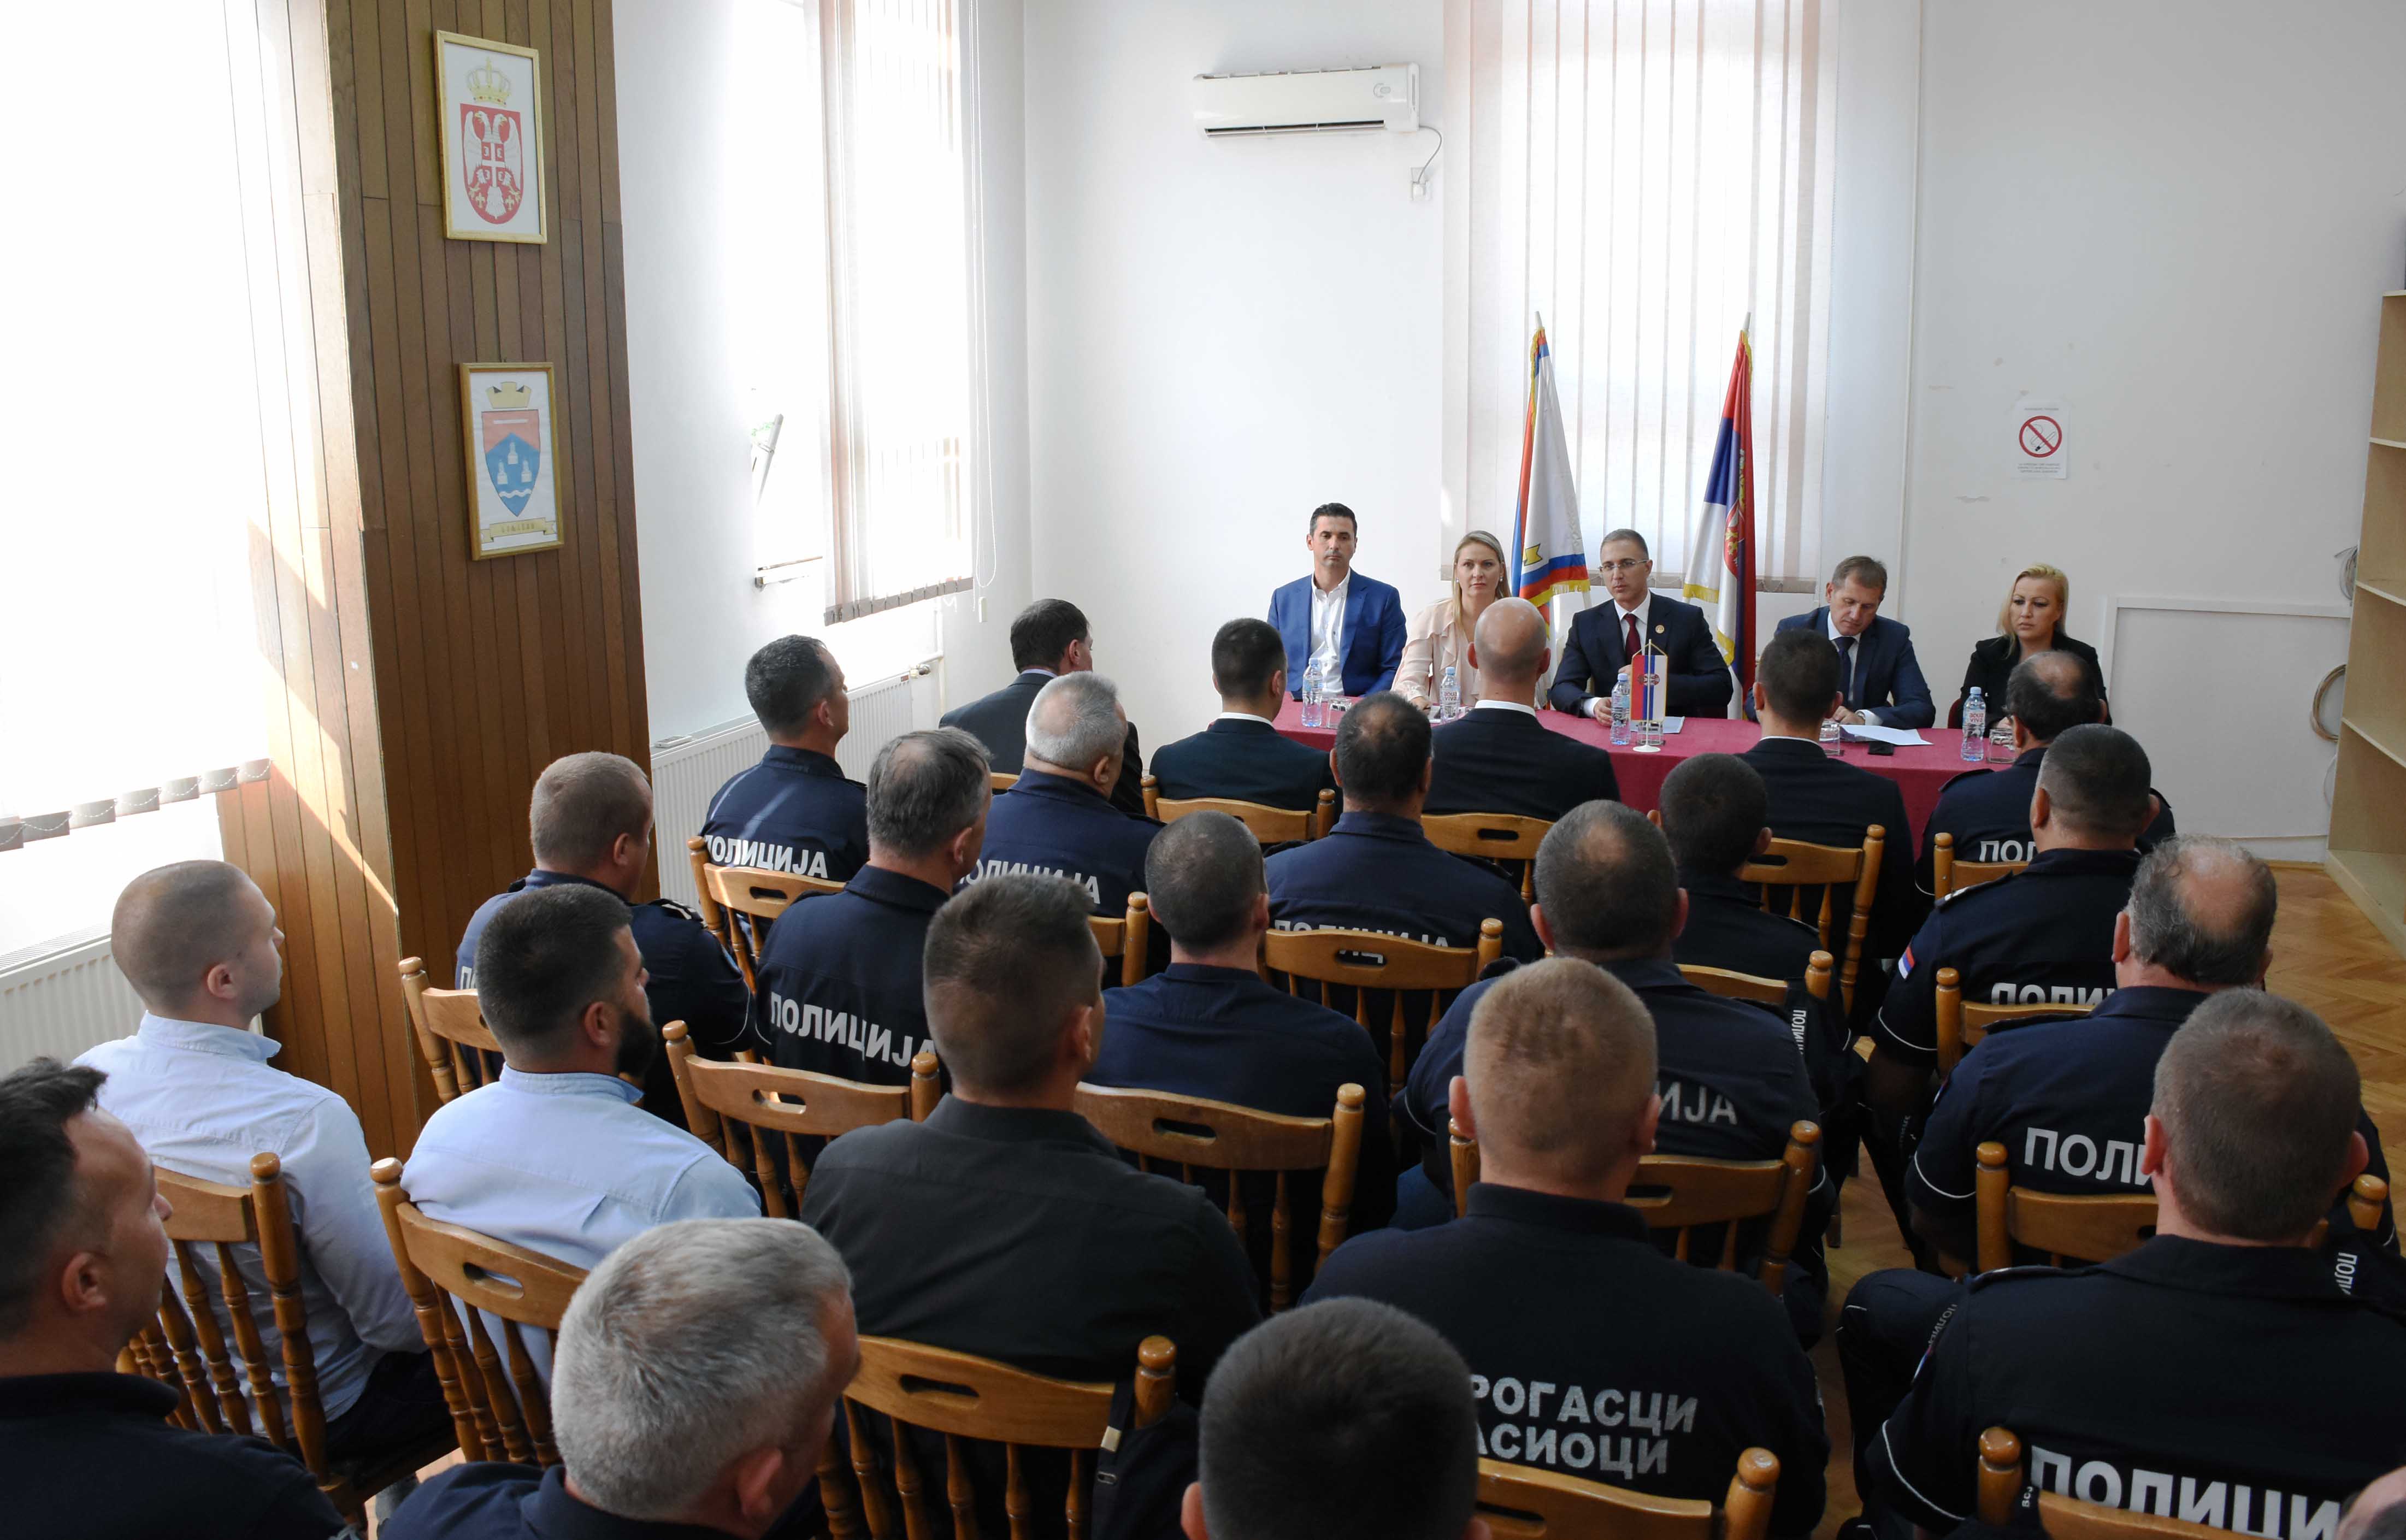  Стефановић: Министарство ће наставити даљу модернизацију полиције, кроз набавку нове опреме, возила и униформи 